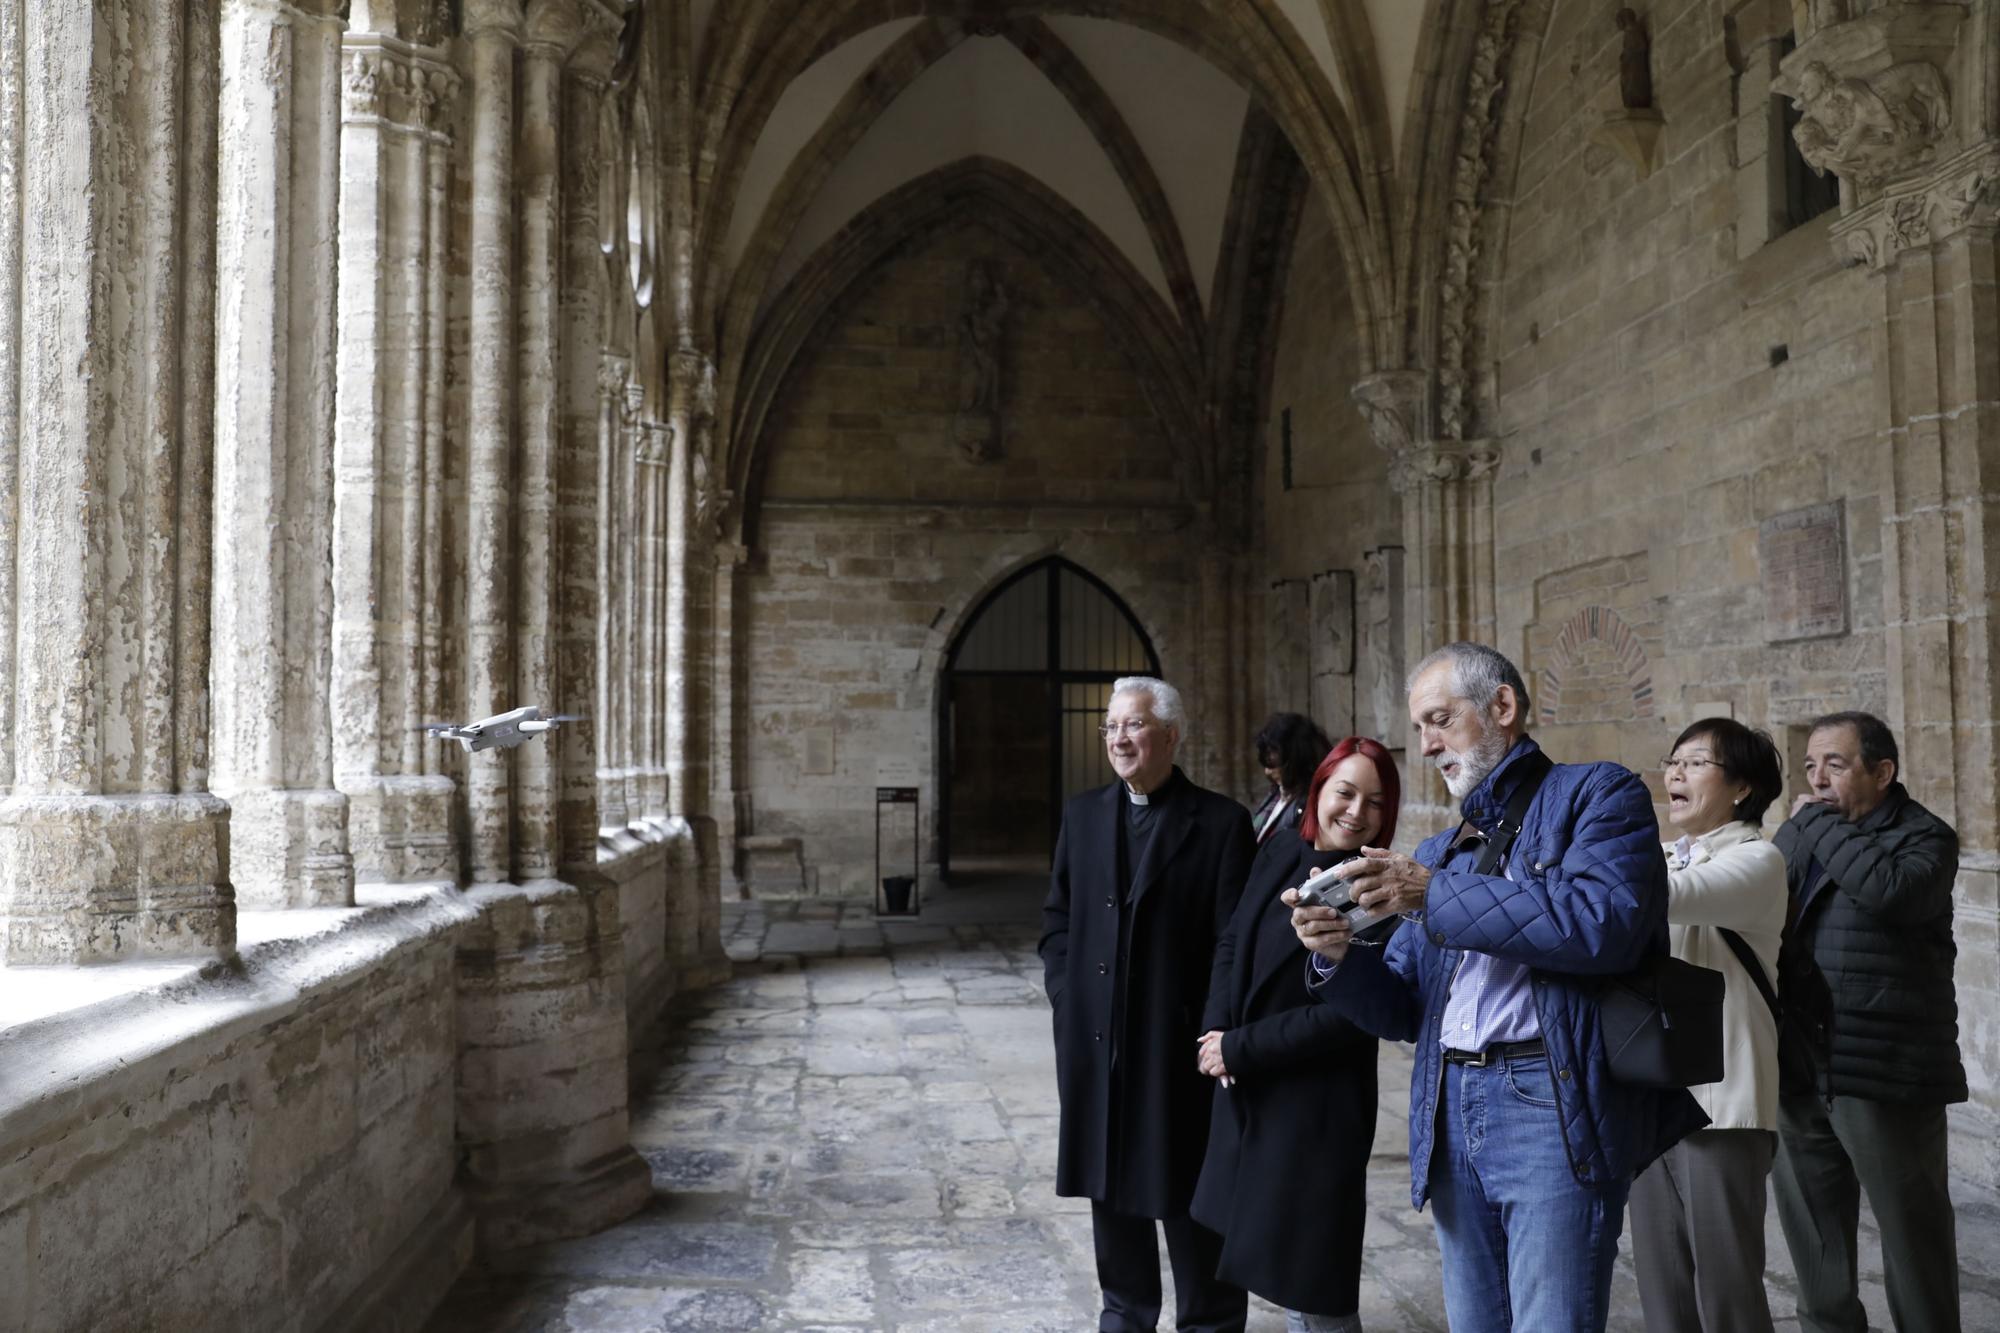 Drones volando en la Catedral de Oviedo: Iñaki Terán graba vídeos inéditos en el templo